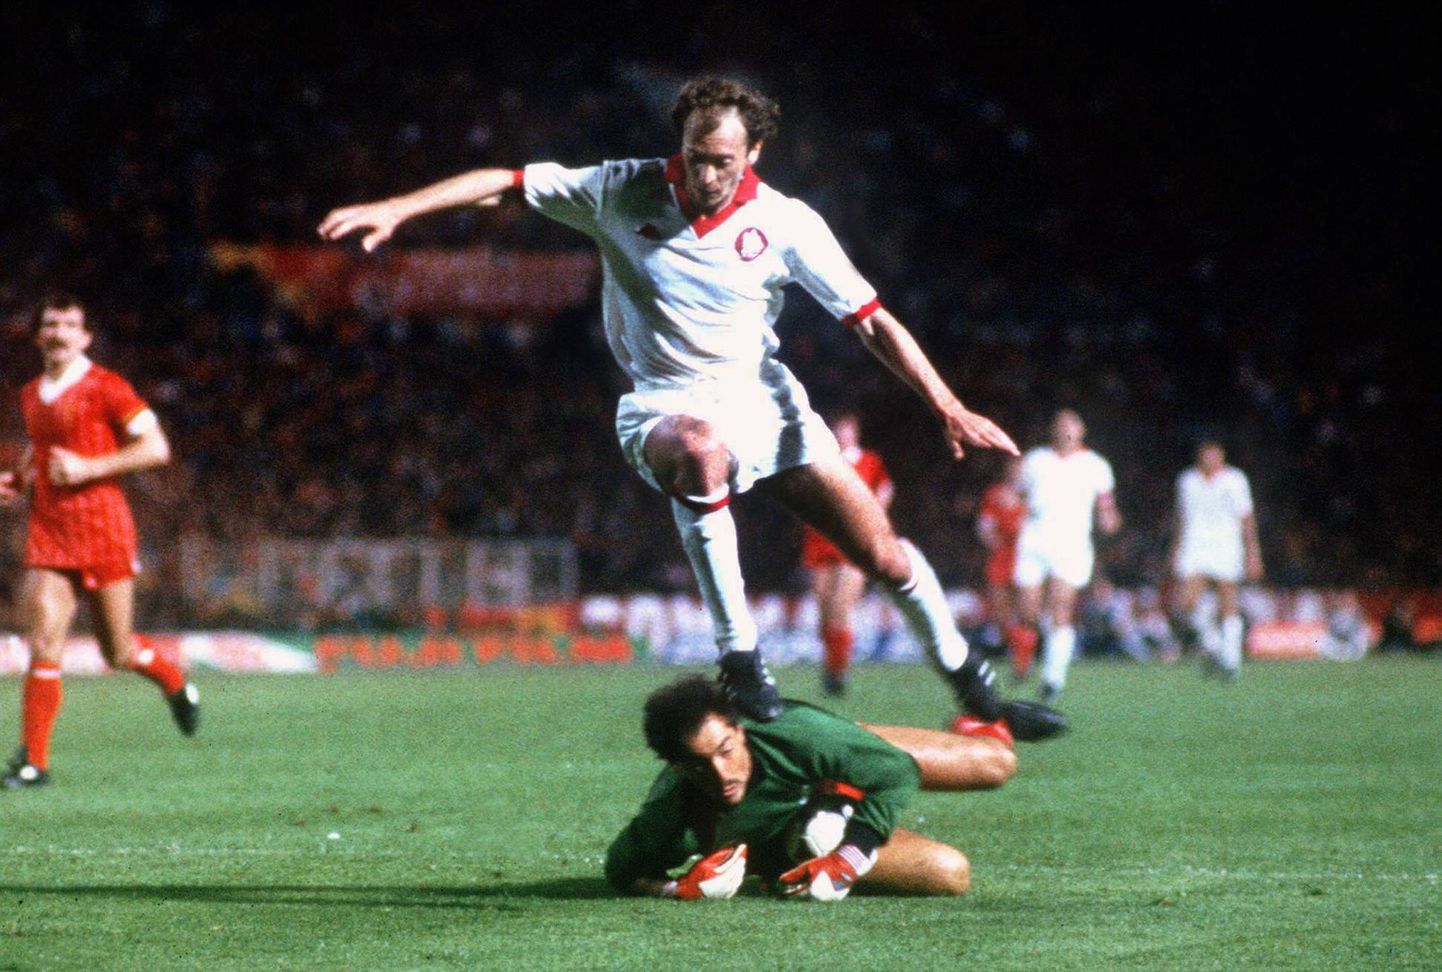 Bruce Grobbelaar (all) aktsioonis 1984. aasta  Euroopa karika (Meistrite liiga eelkäija) finaalis, kus Liverpool alistas pärast 1:1 lõppenud normaal- ja lisaaega penaltitega 4:2 AS Roma.